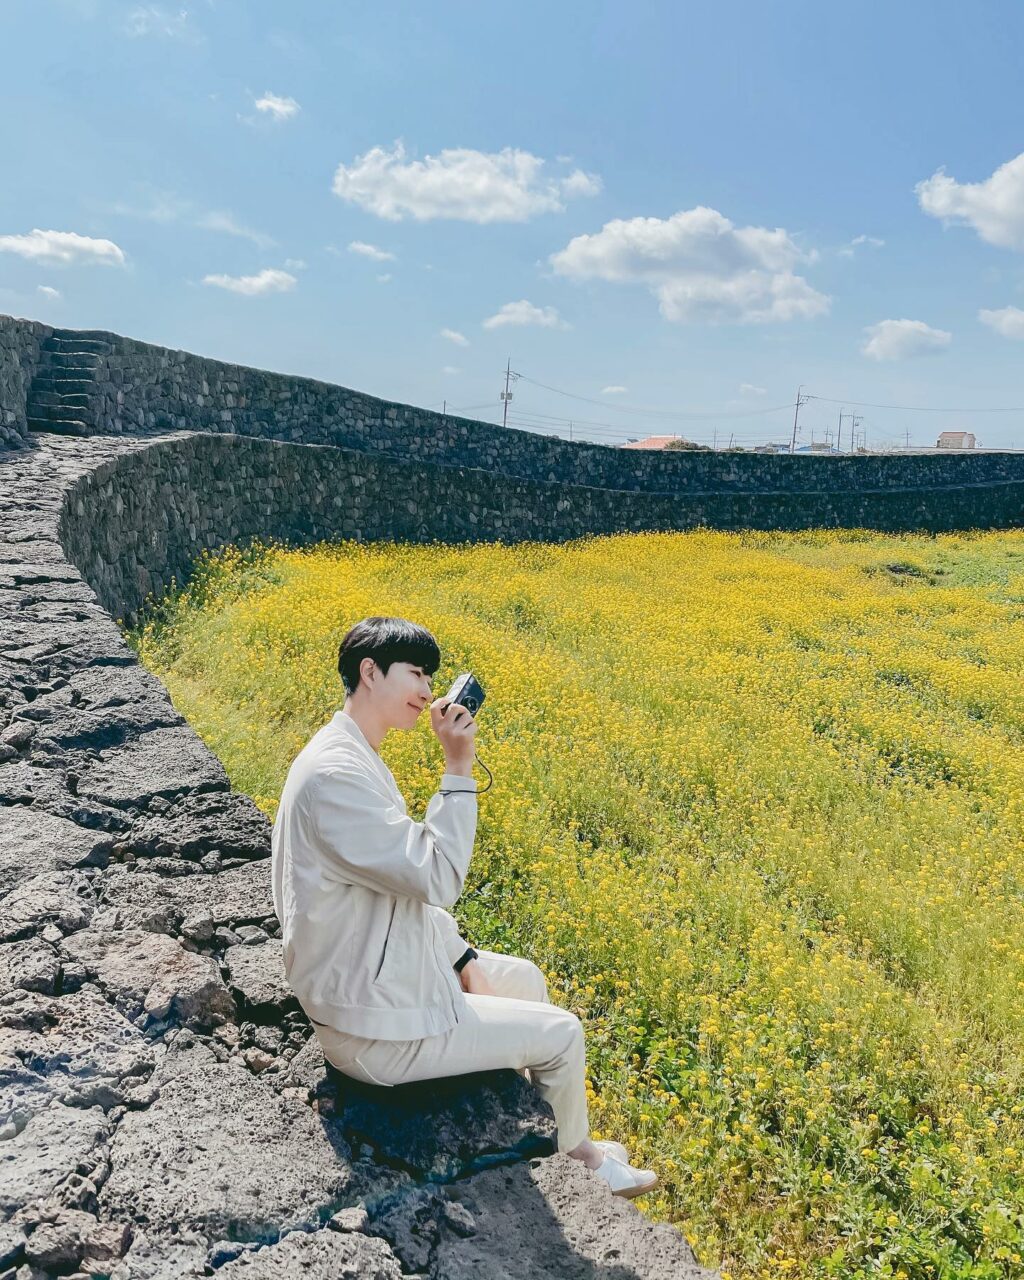 제주 여행, 제주 하도리 별방진과 유채꽃 풍경, Photo from yoribogo Instagram